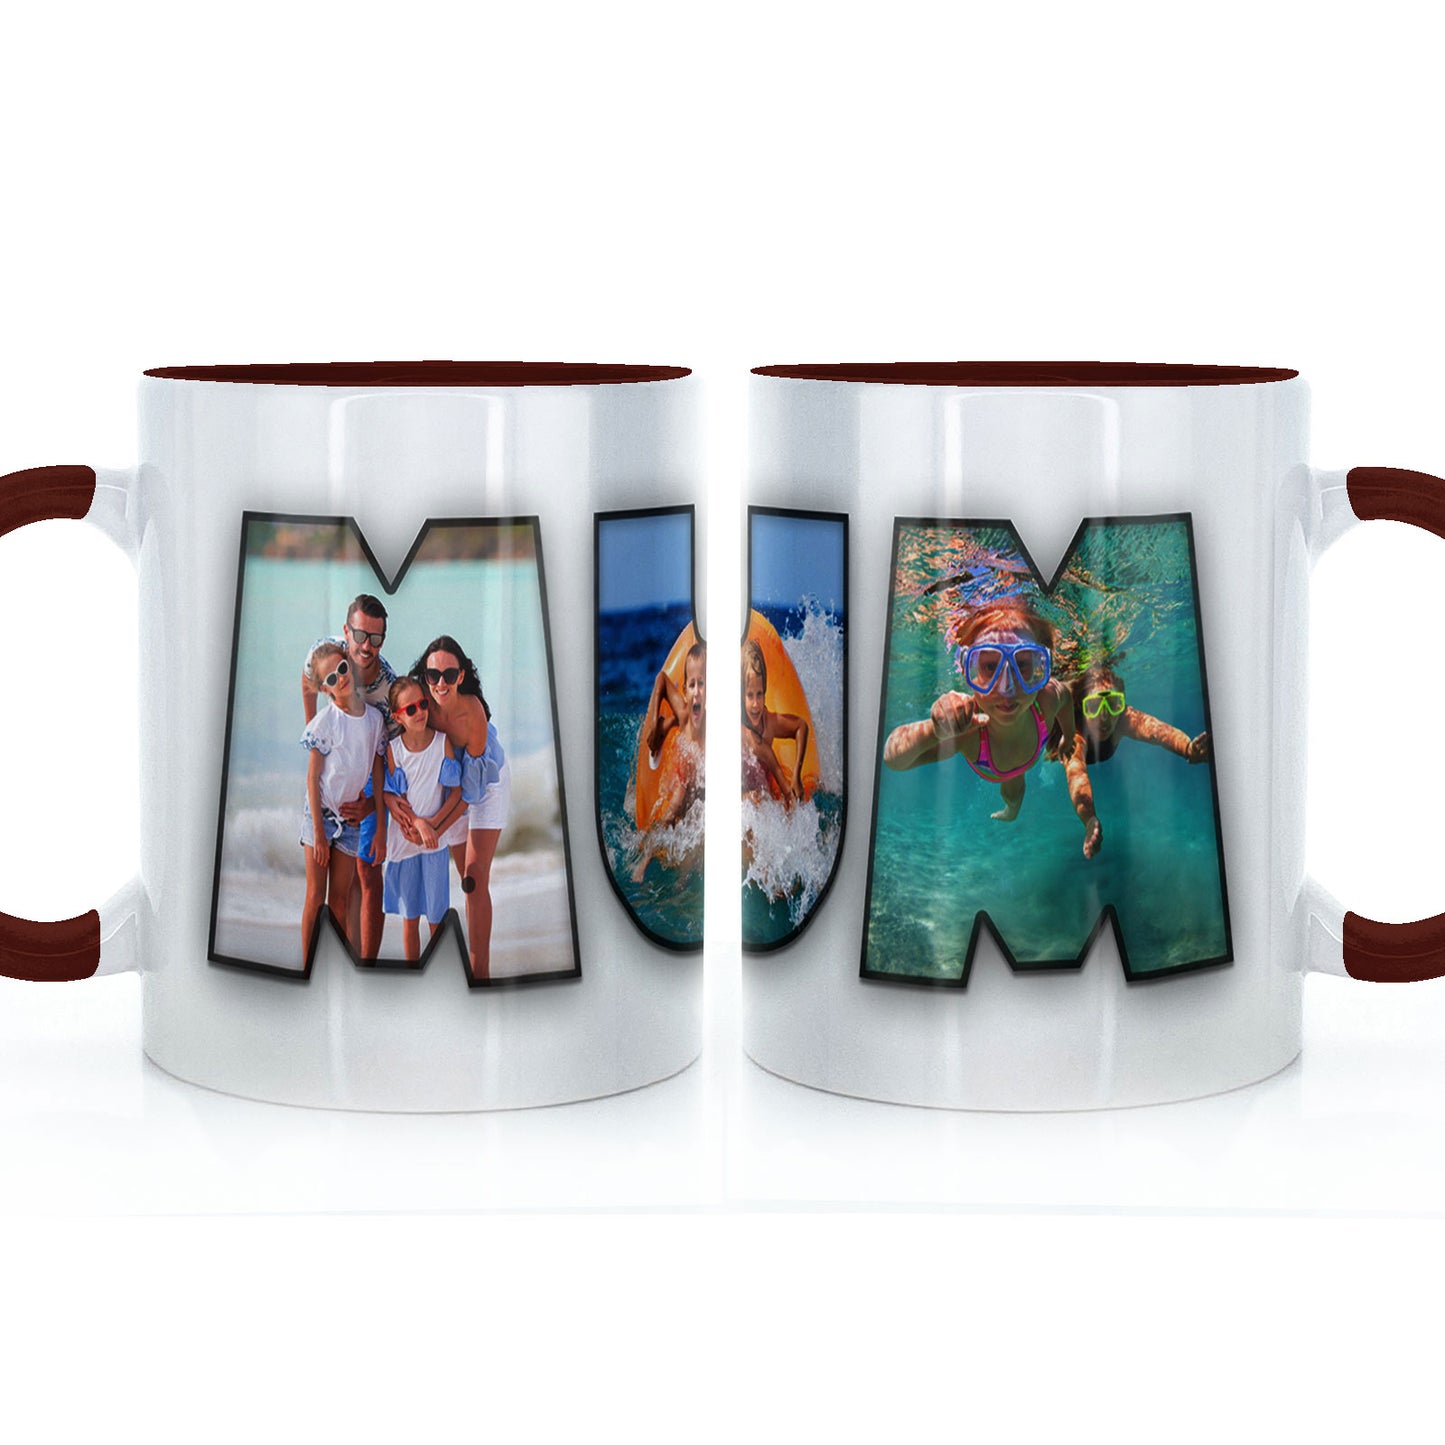 Personalised Mug with MUM Photo Collage